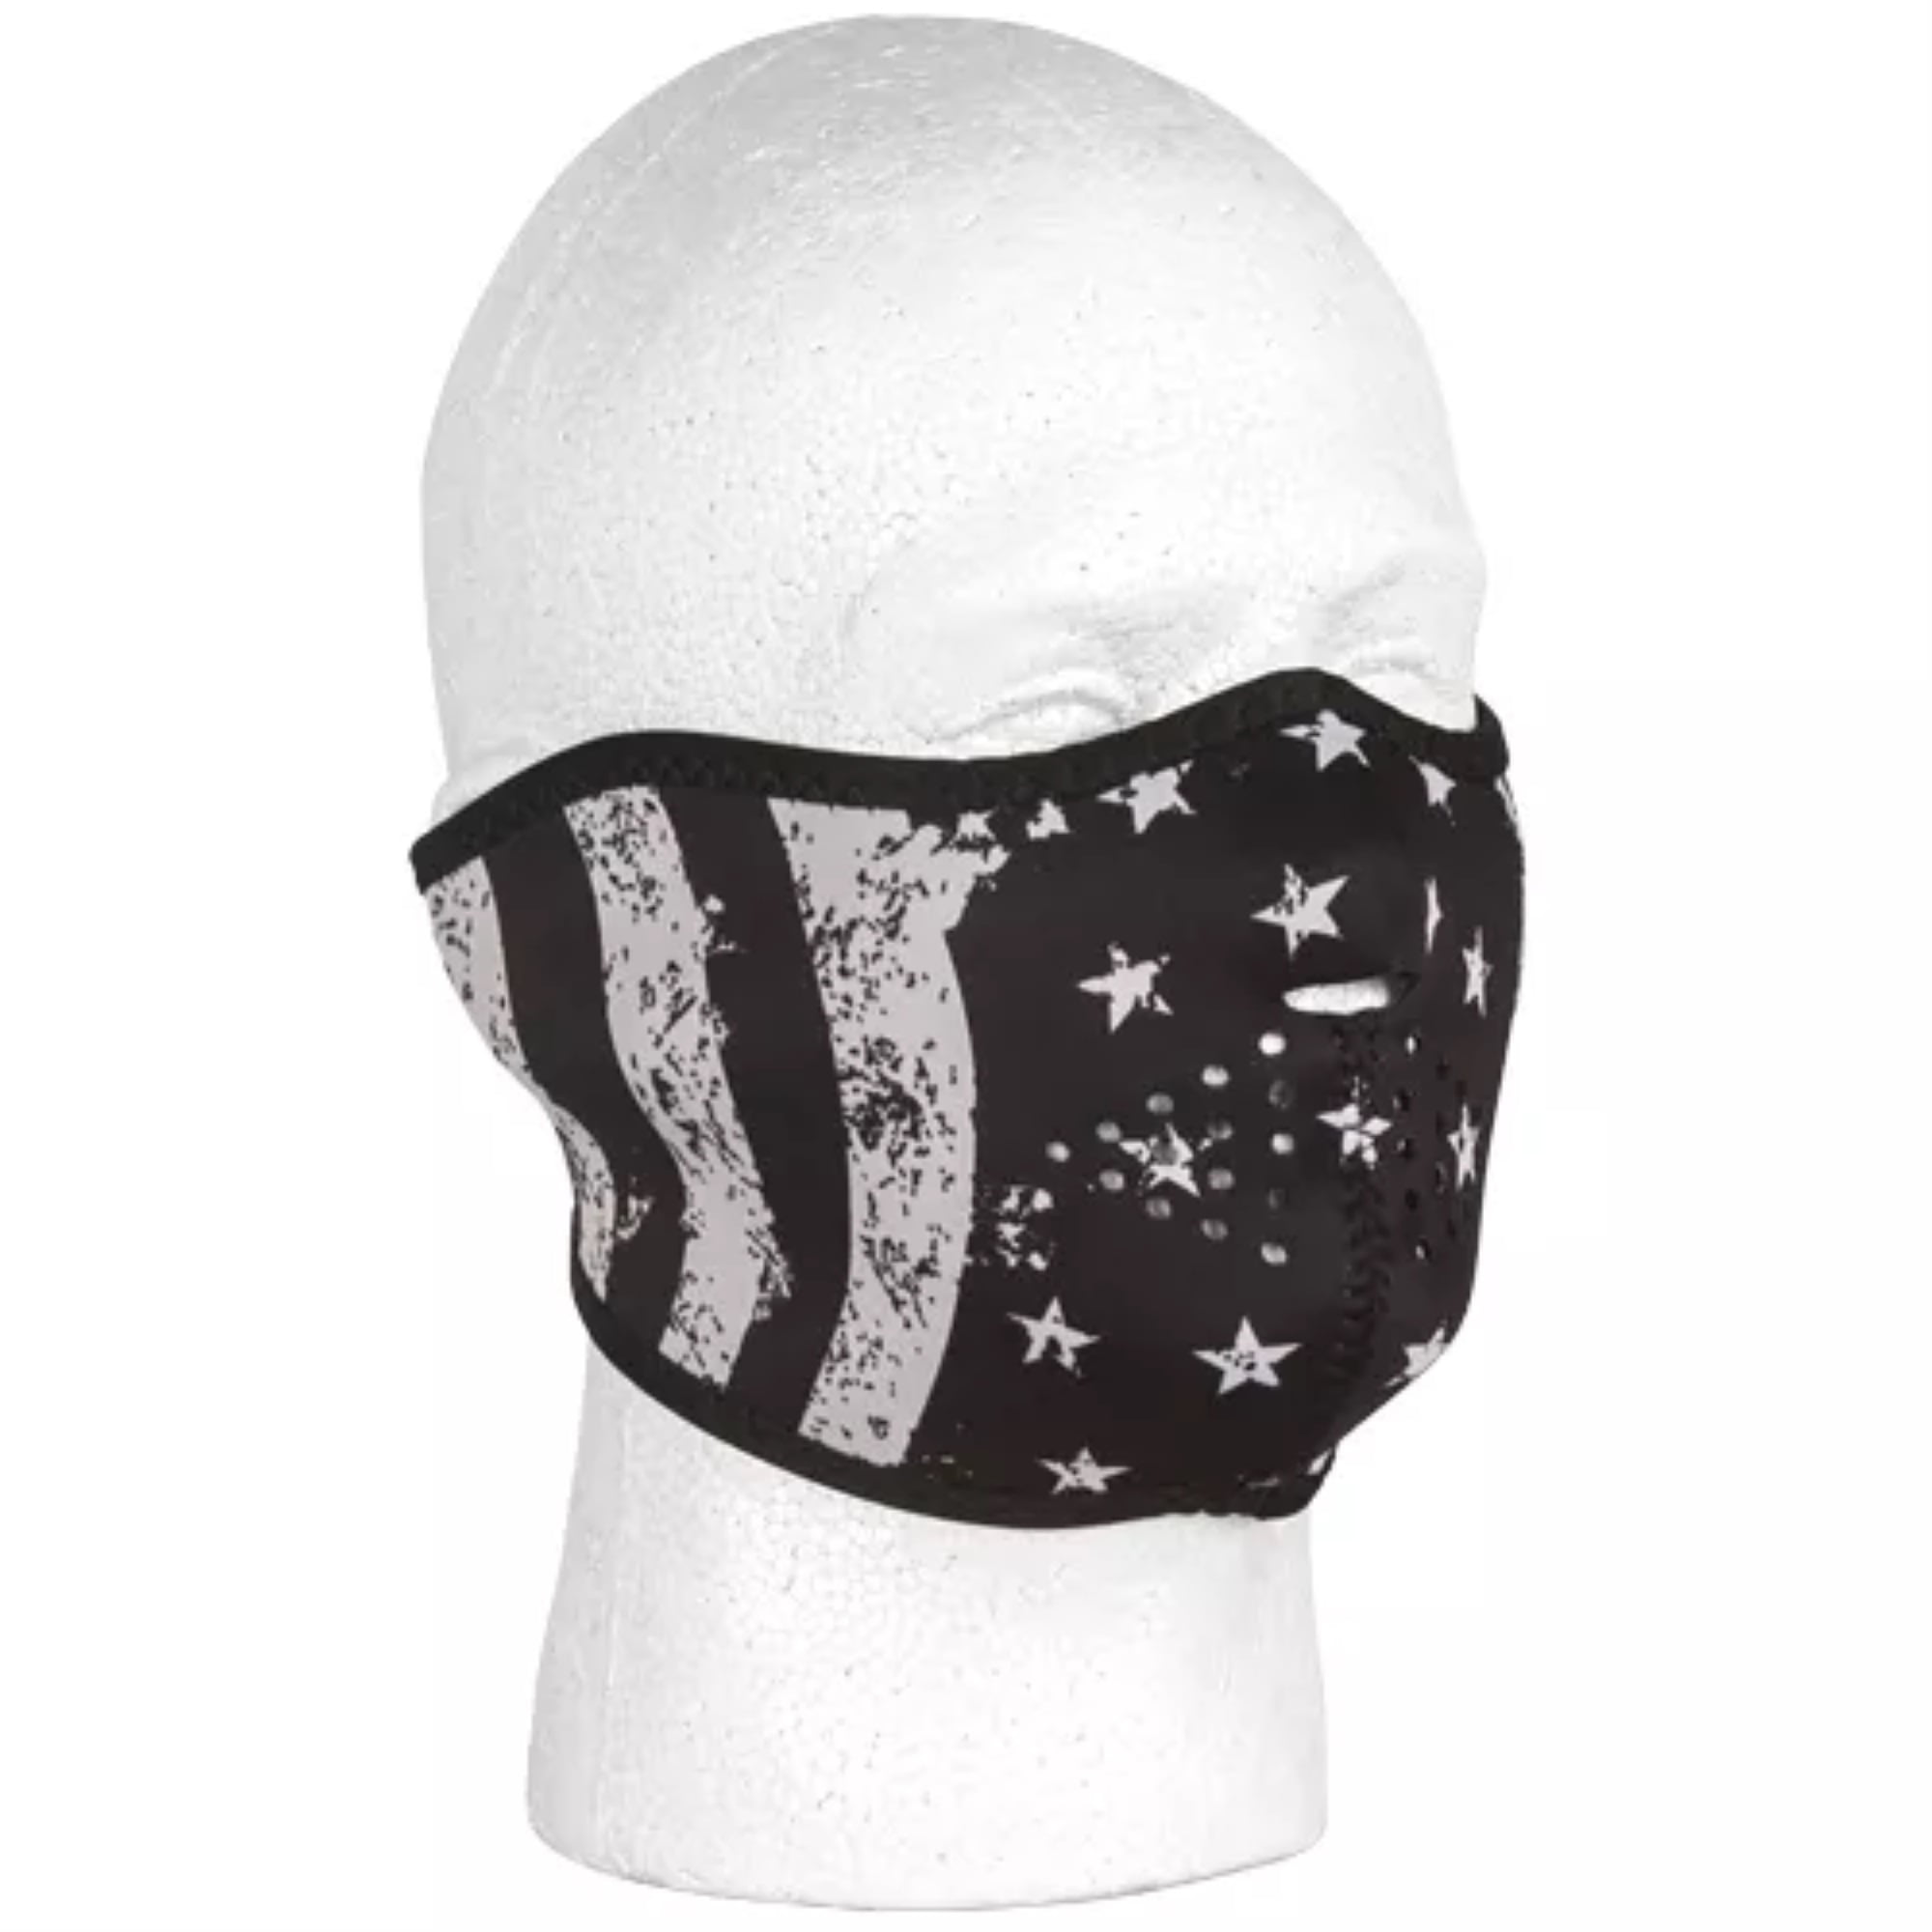 Small Child Size USA Flag Neoprene Full Face Mask Zan Headgear Free Shipping 